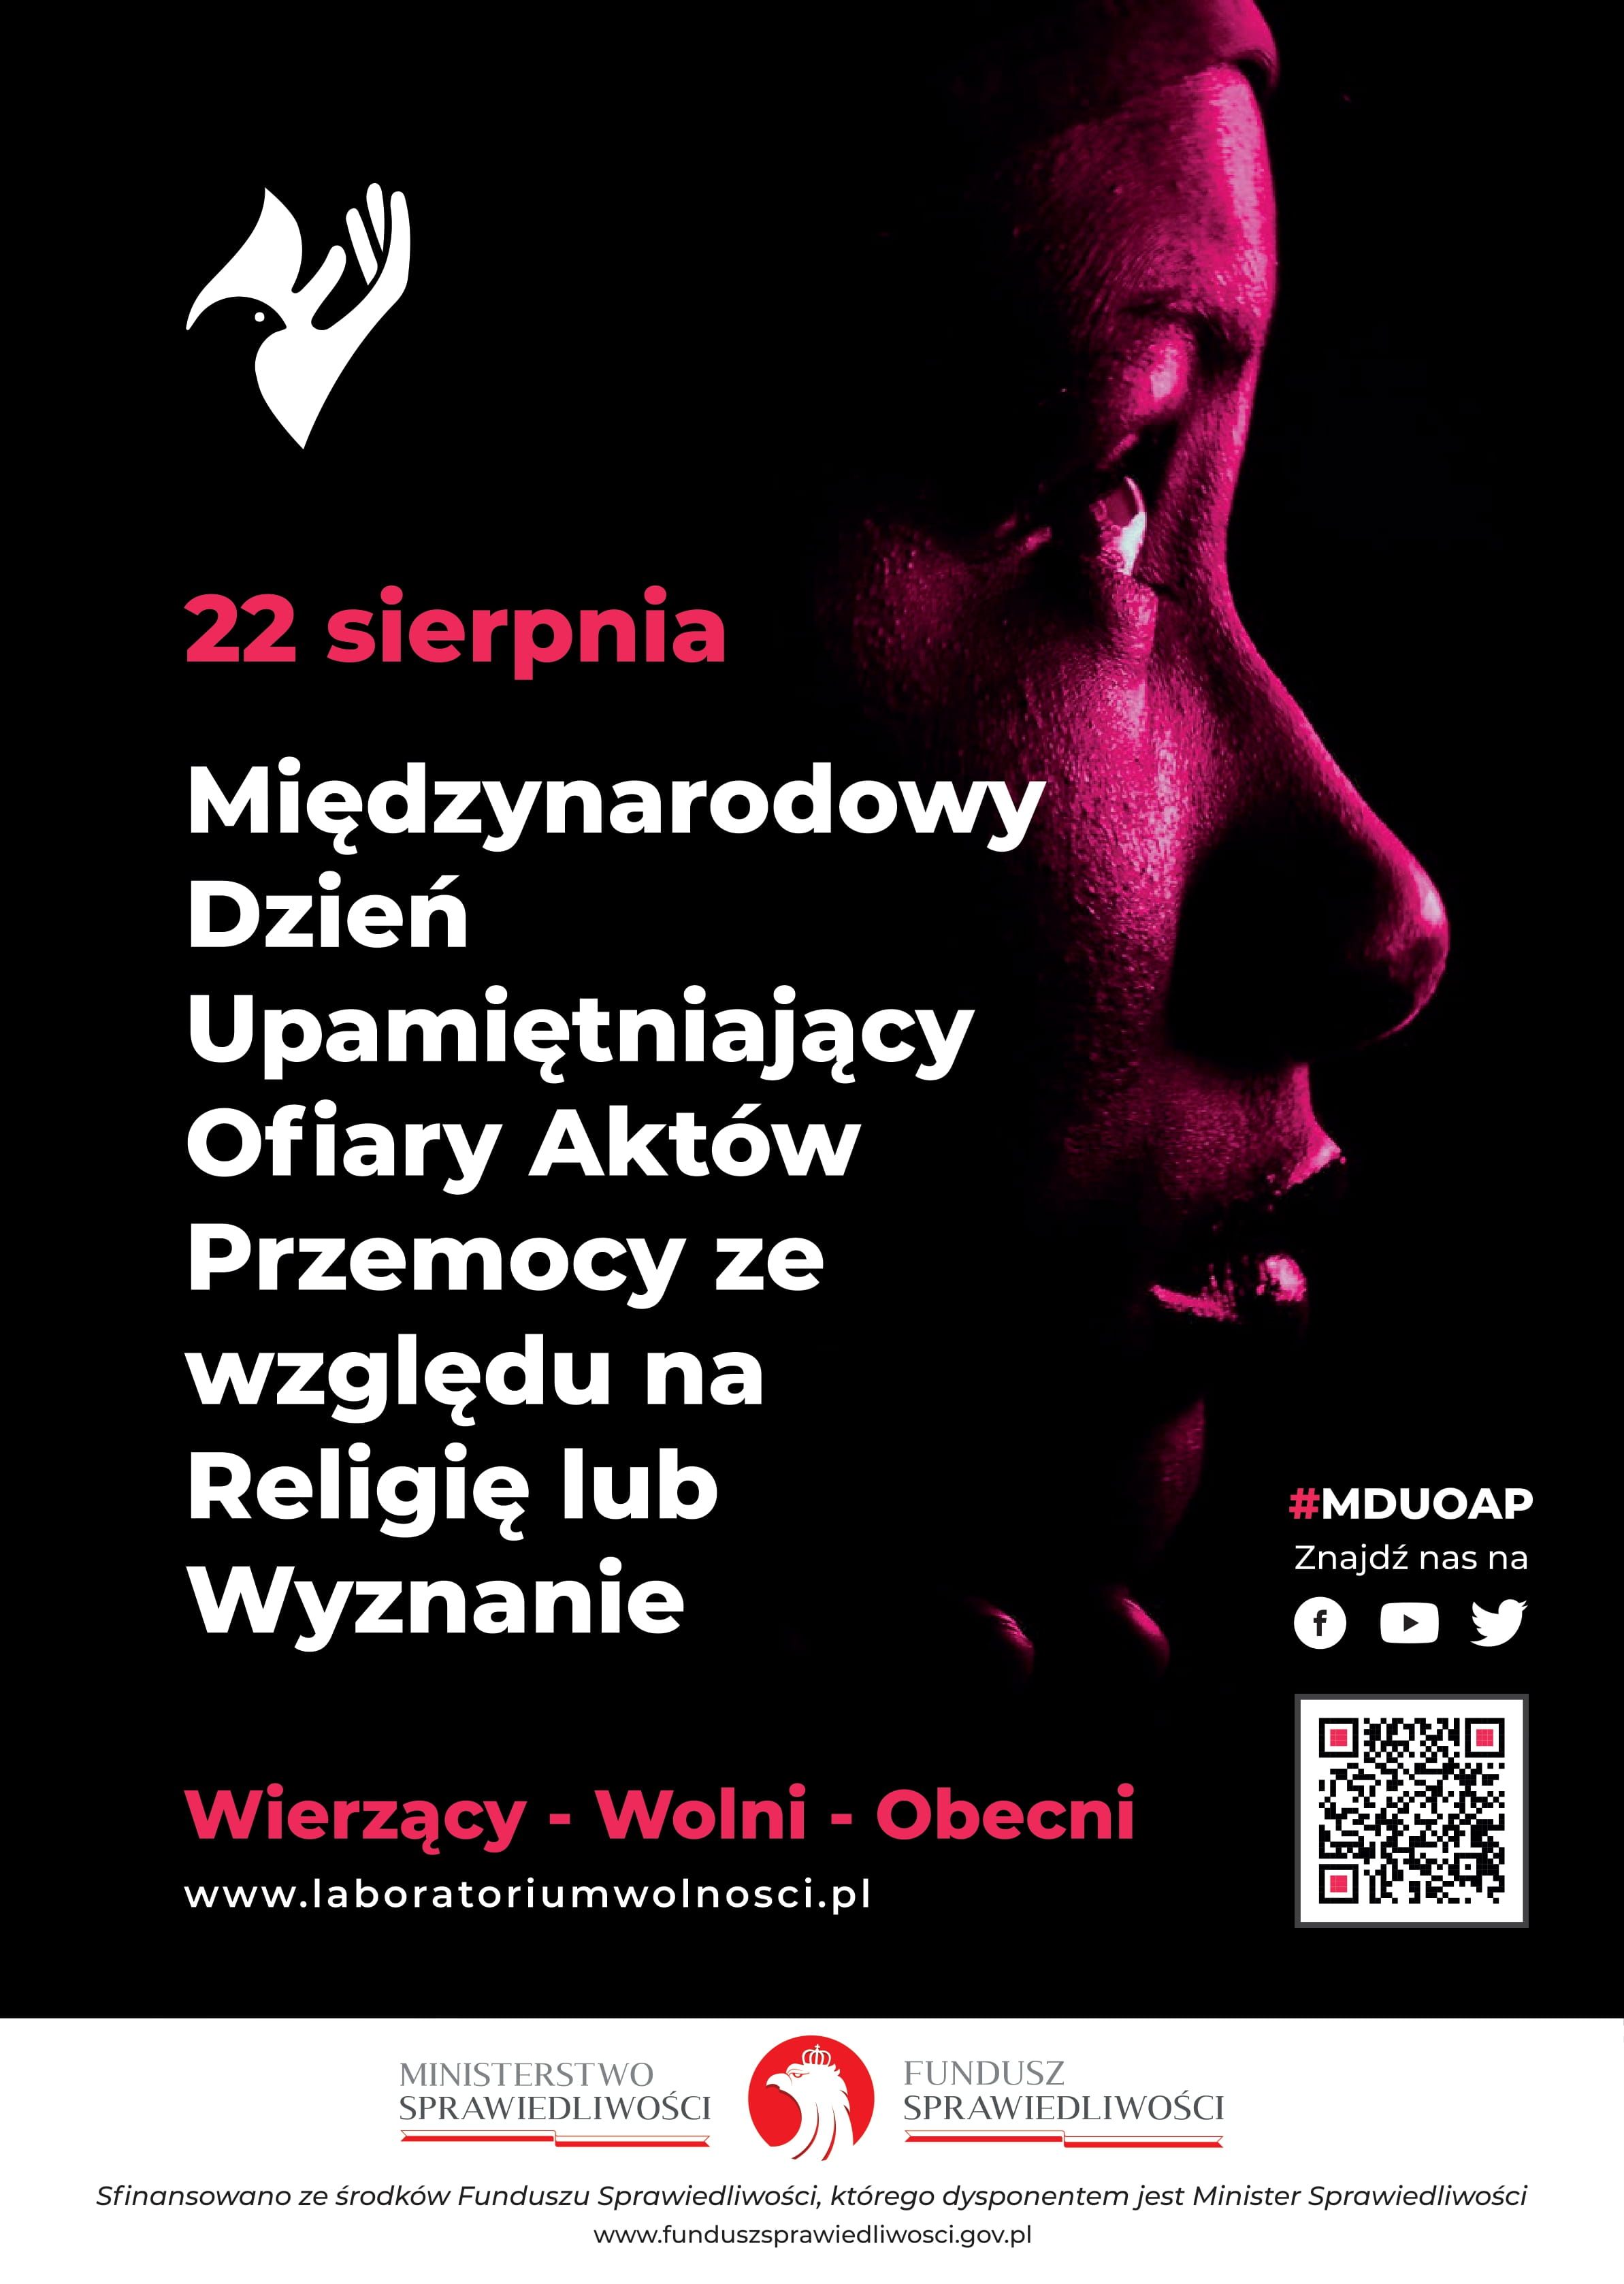 Plakat promujący Międzynarodowy Dzień Upamiętniający Ofiary Aktów Przemocy ze względu na Religię lub Wyznanie